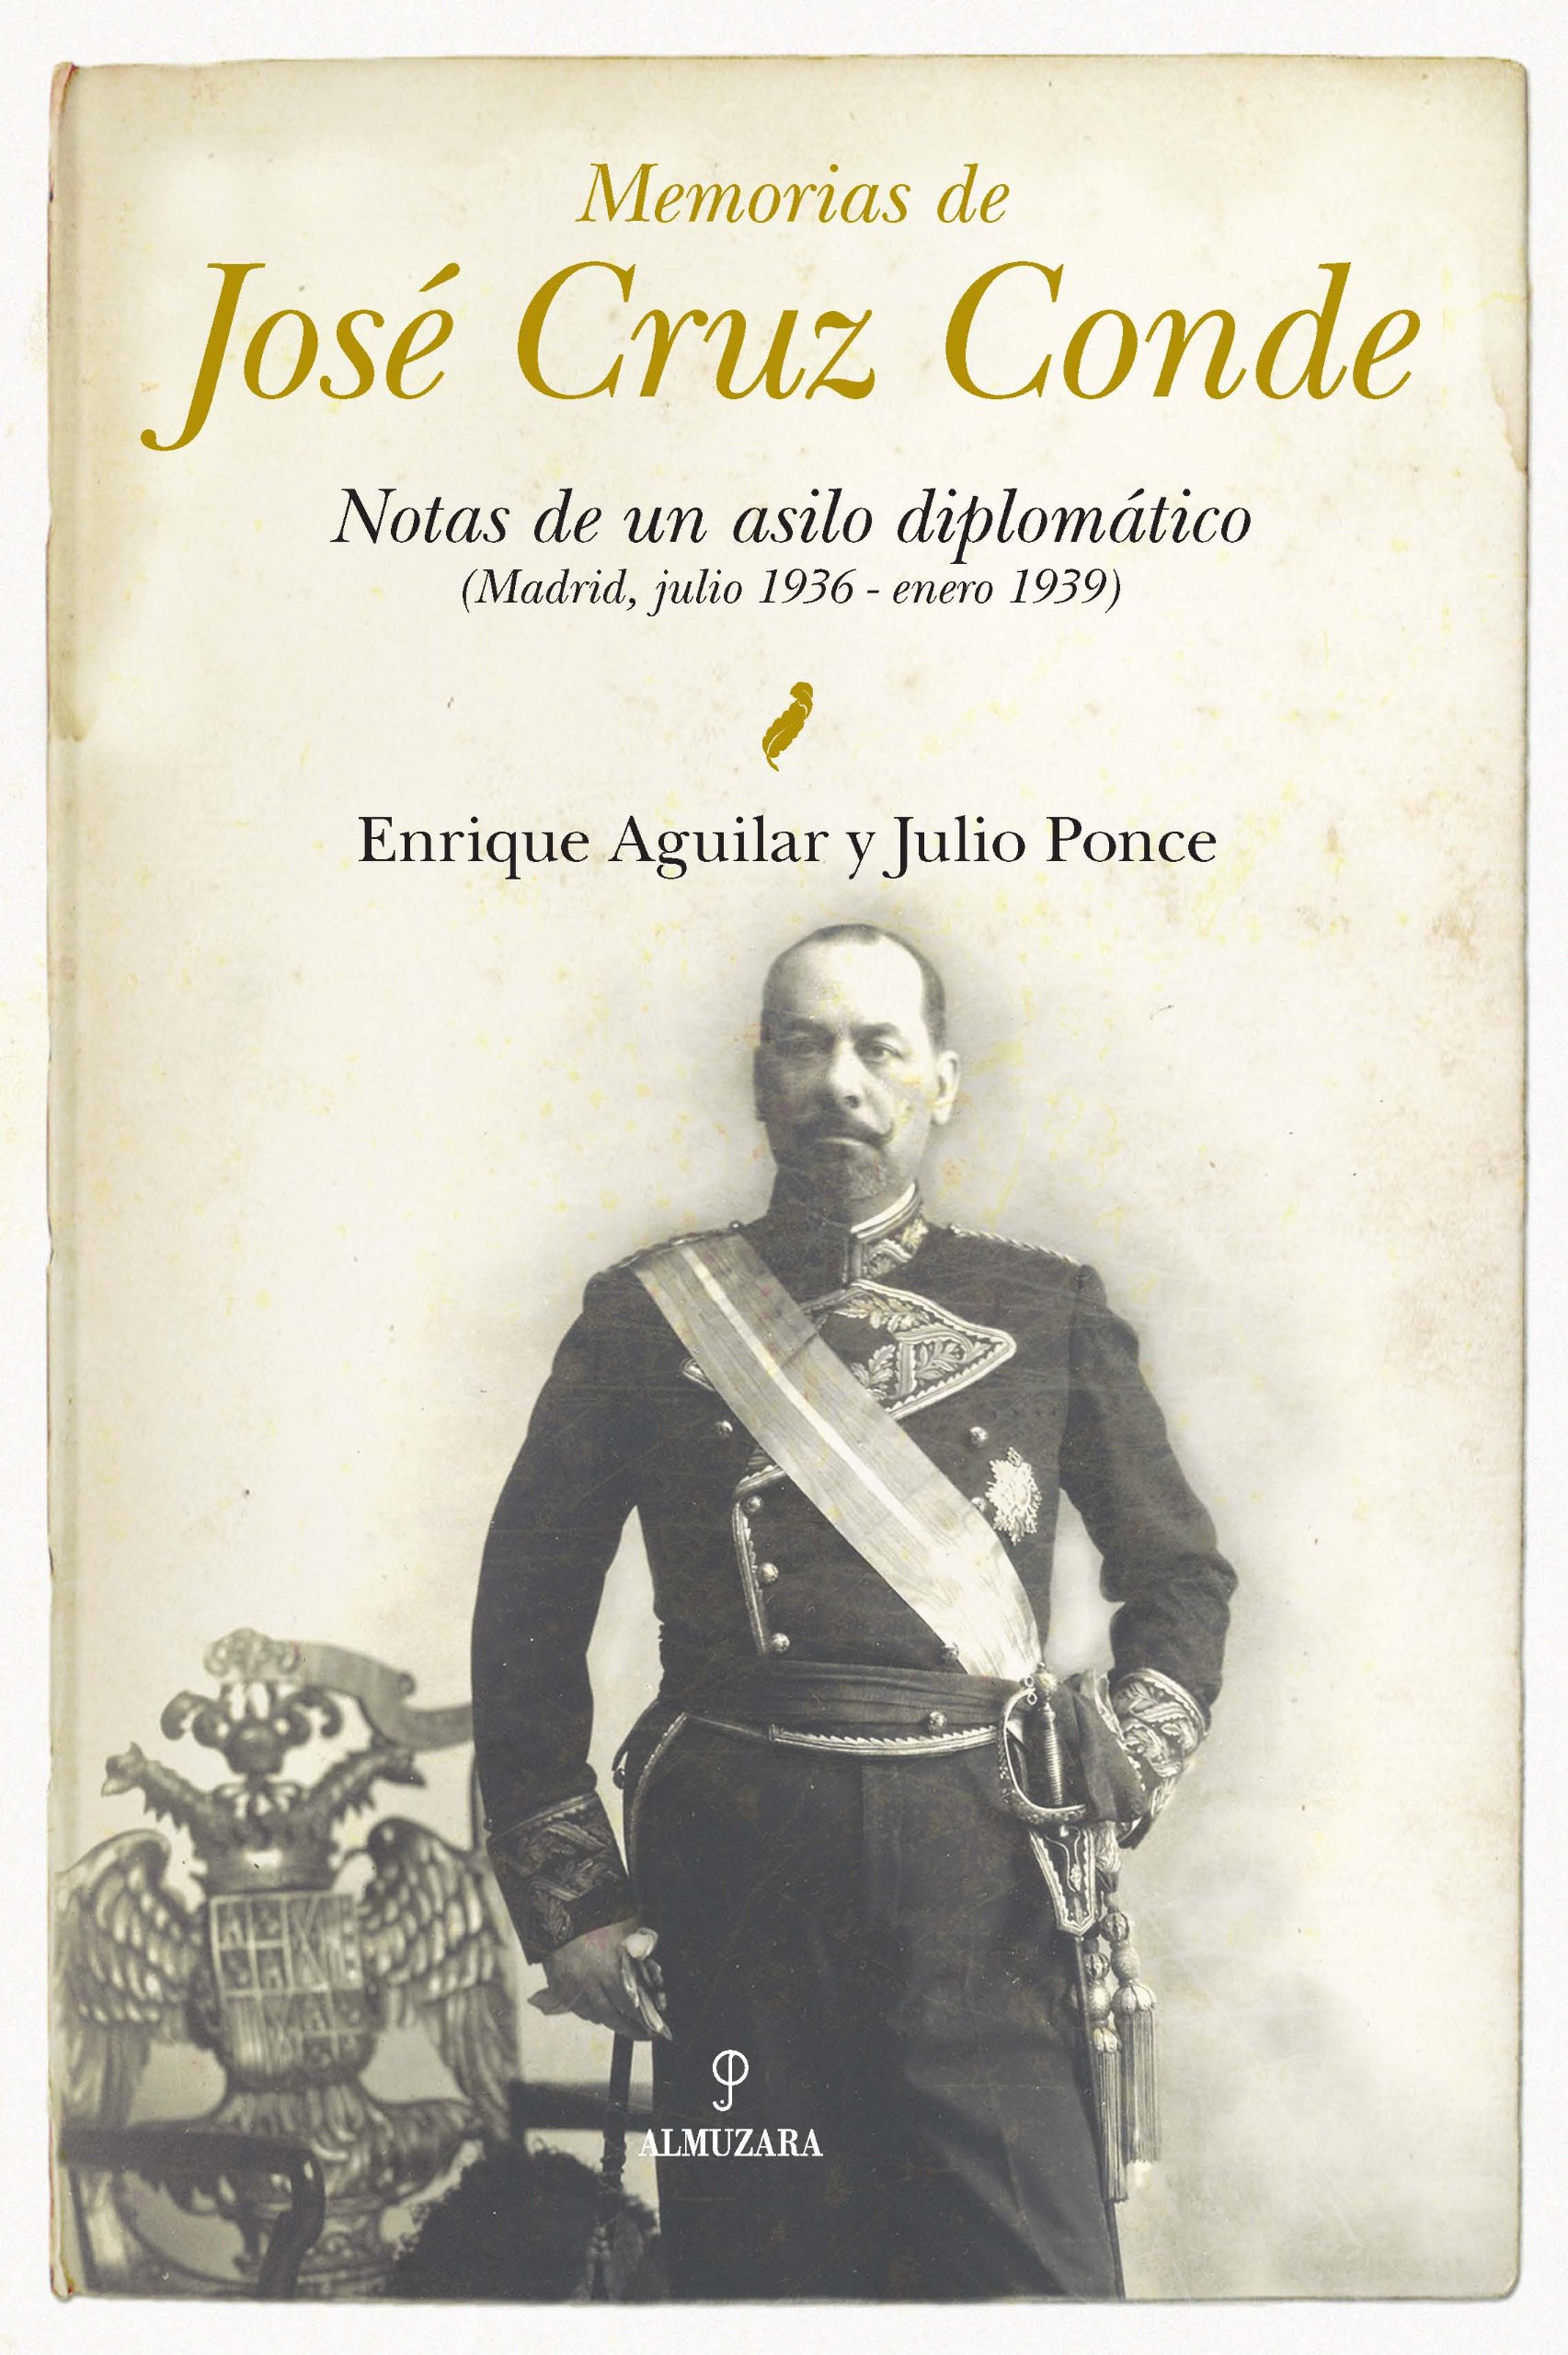 Imagen de portada del libro Memorias de José Cruz Conde